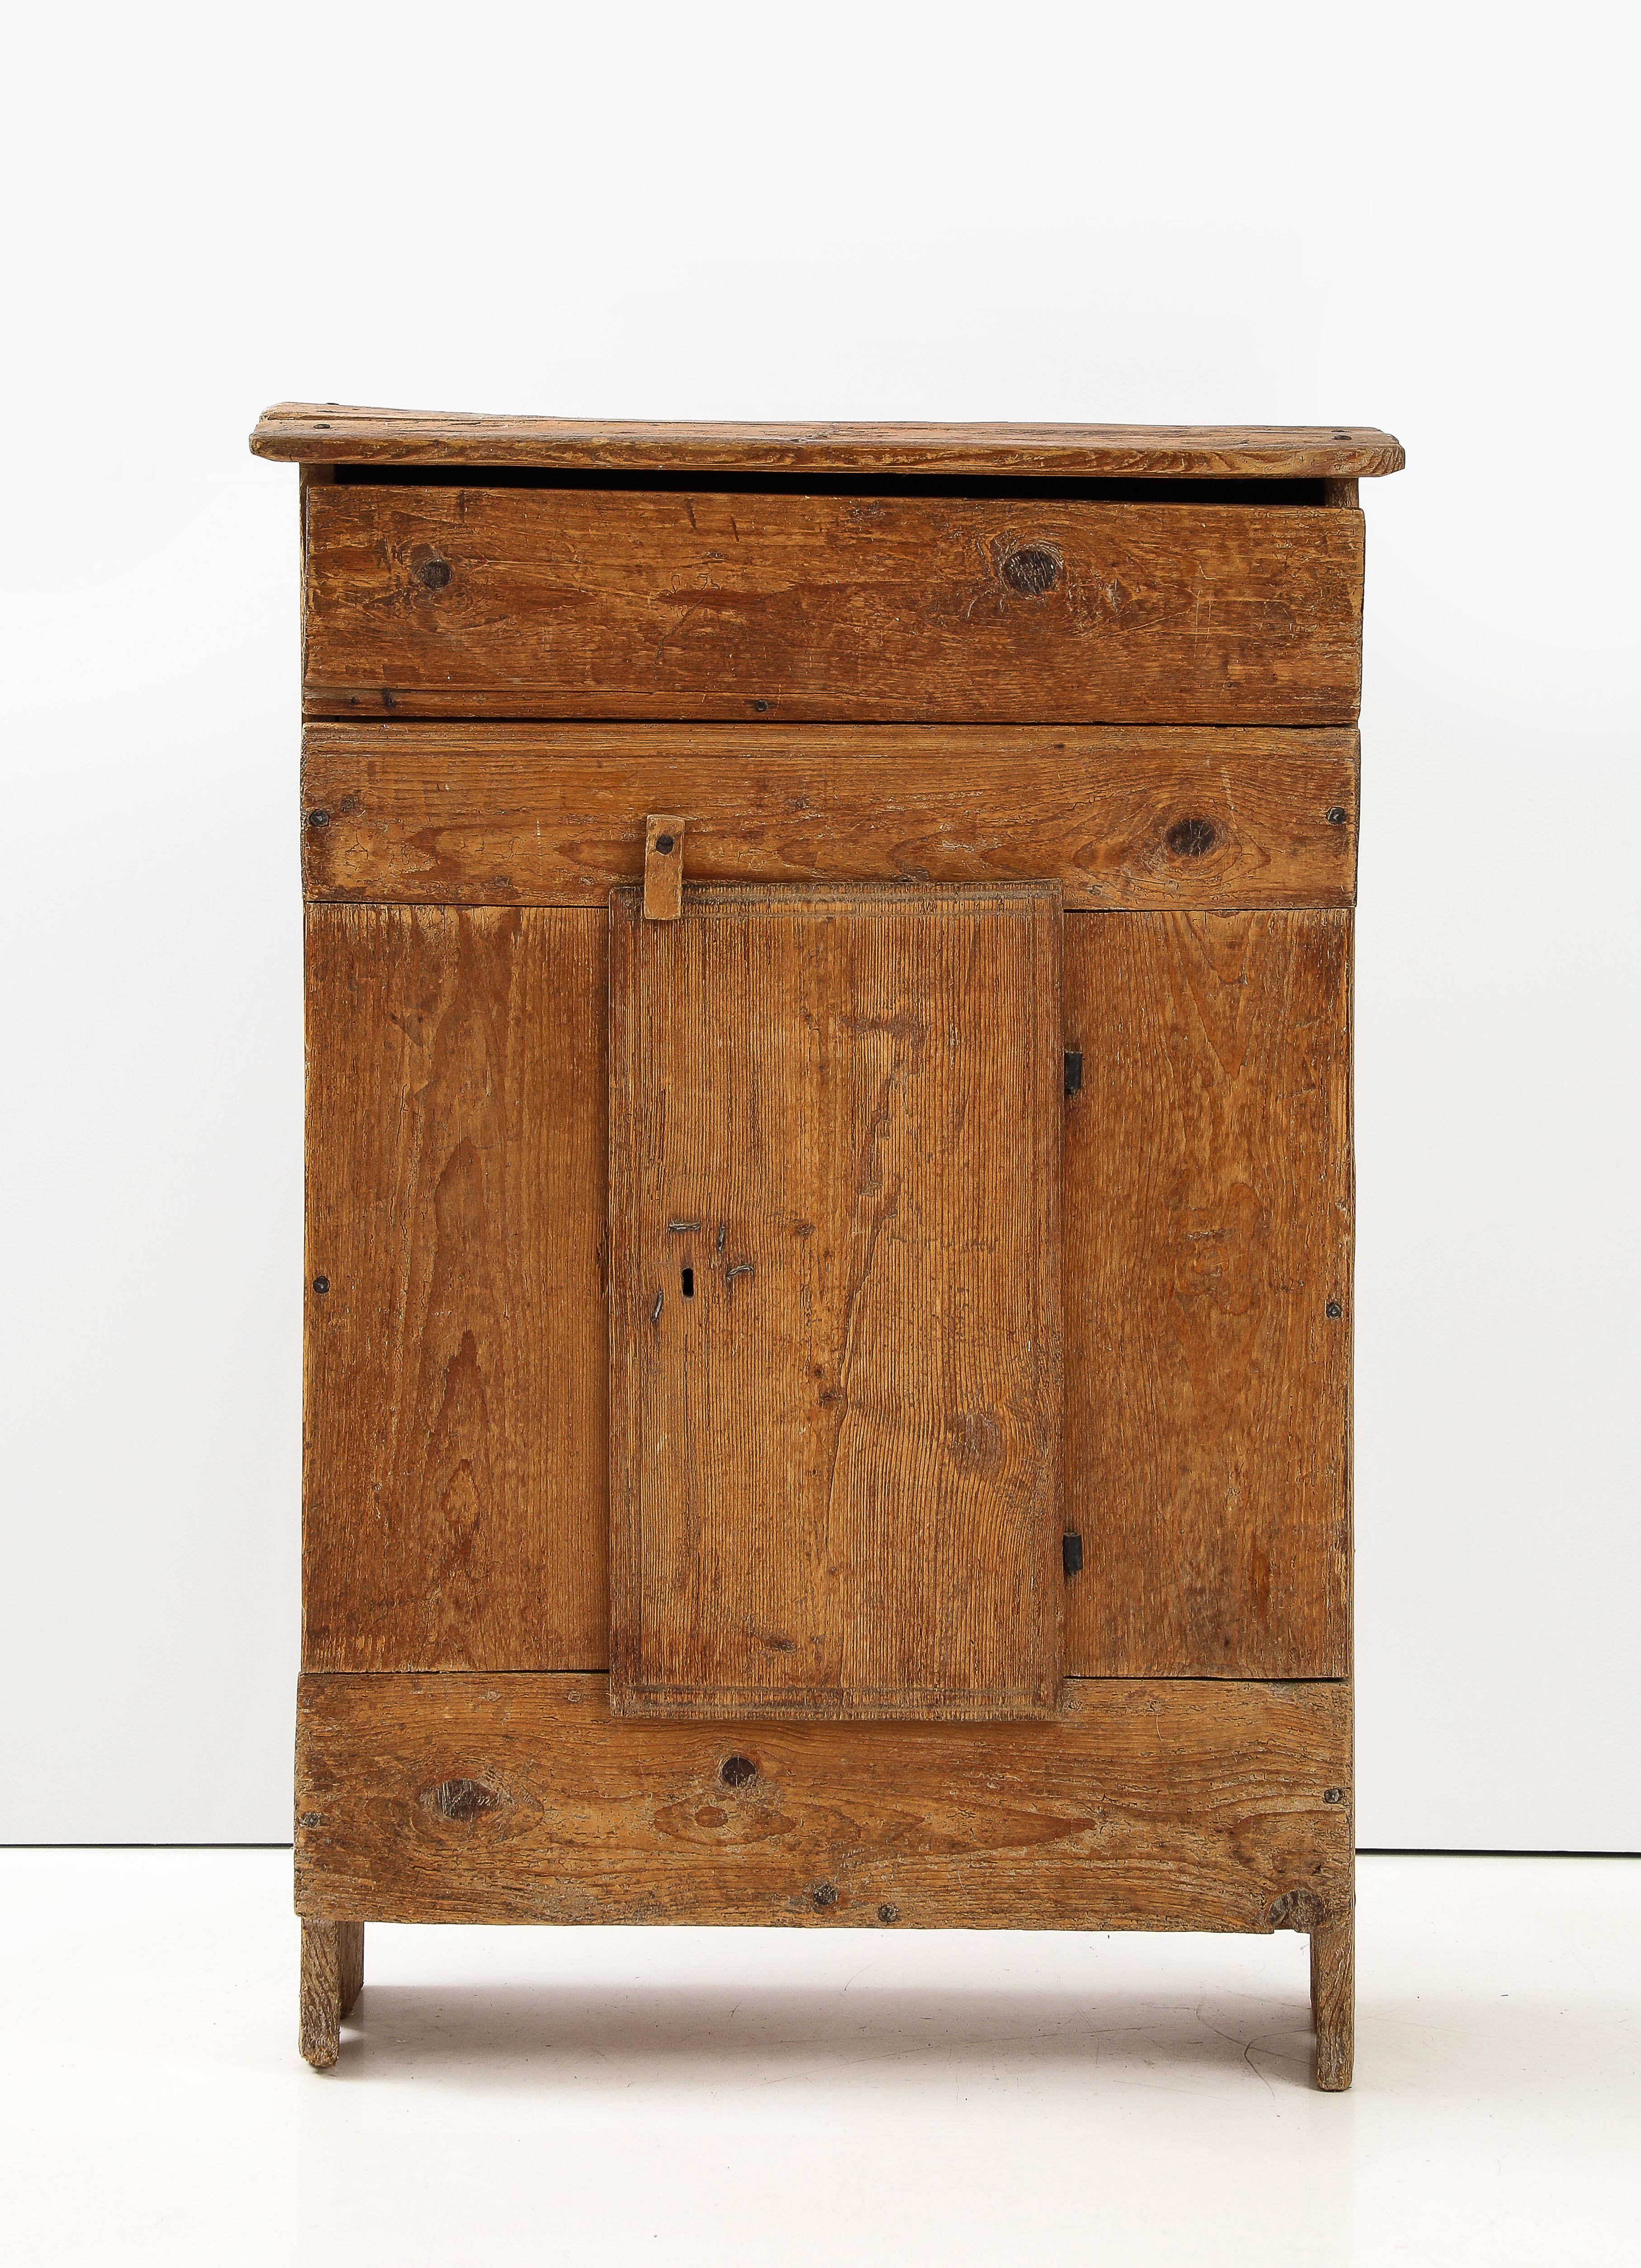 Merveilleuse armoire faite à la main avec un tiroir supérieur et deux étagères provenant des Alpes italiennes, date gravée sur le côté.